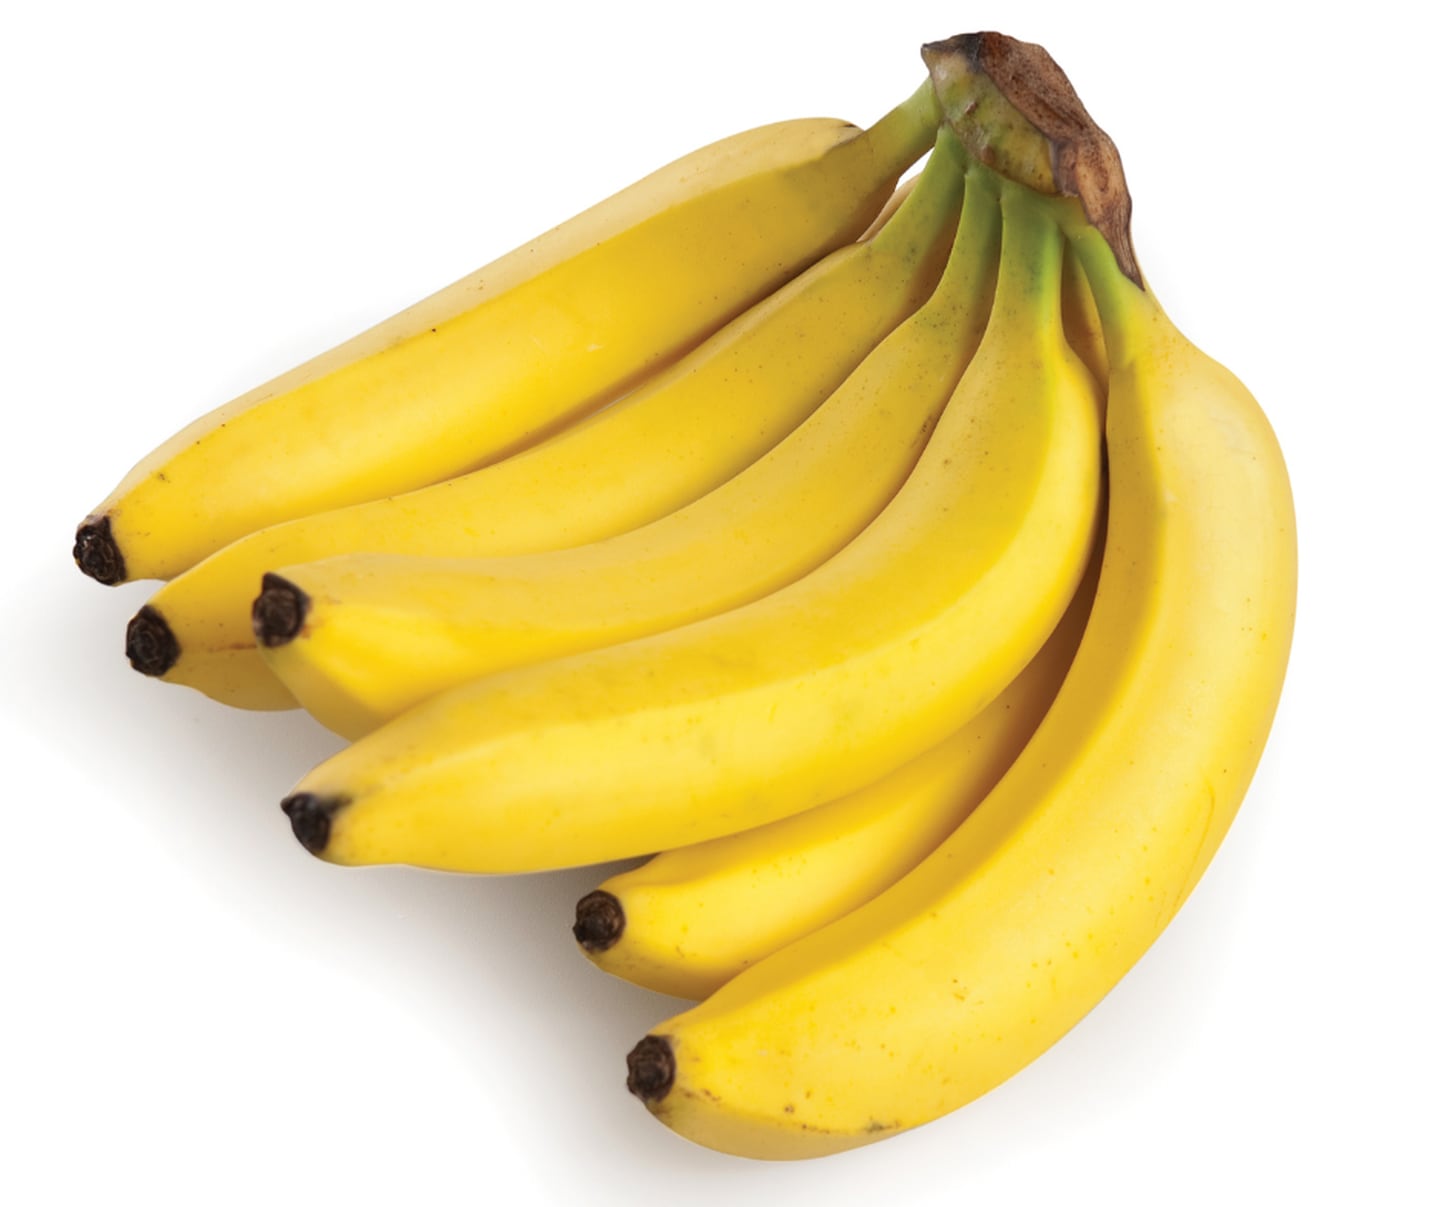 Un banano pequeño contiene
aproximadamente 70 kcal. Posee
un tipo de fibra llamada FOS
(fructo-oligosacáridos), la cual se ha
relacionado con el crecimiento de
bacterias buenas en el colon. Es rico
en potasio, vitamina B6 y ácido fólico.